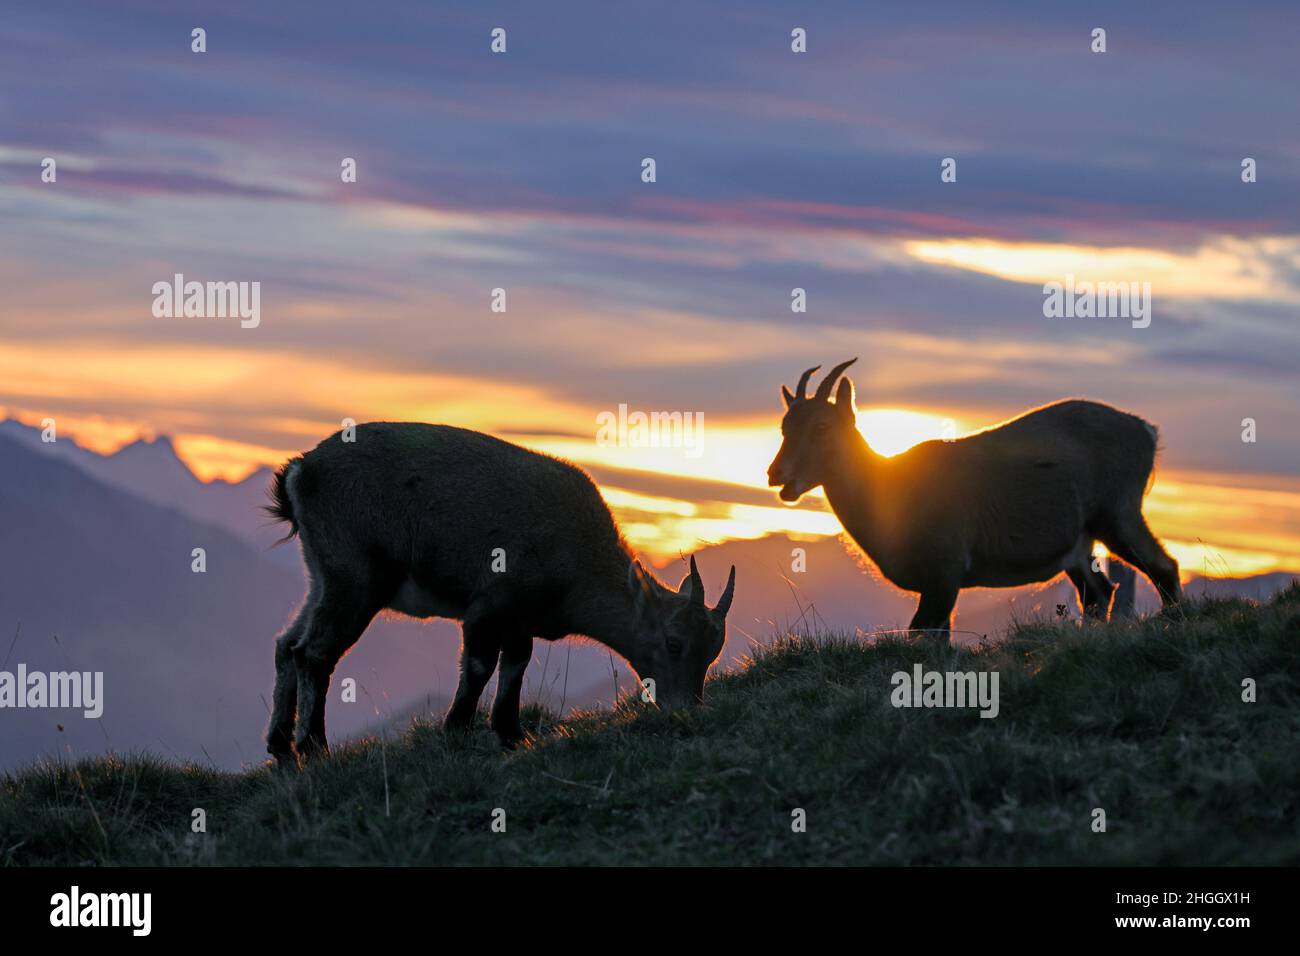 Stambecco alpino (Capra ibex, Capra ibex ibex), due giovani animali che pascolano insieme sul lato del pendio, controluce, Svizzera, Oberland Bernese, Beatenberg Foto Stock